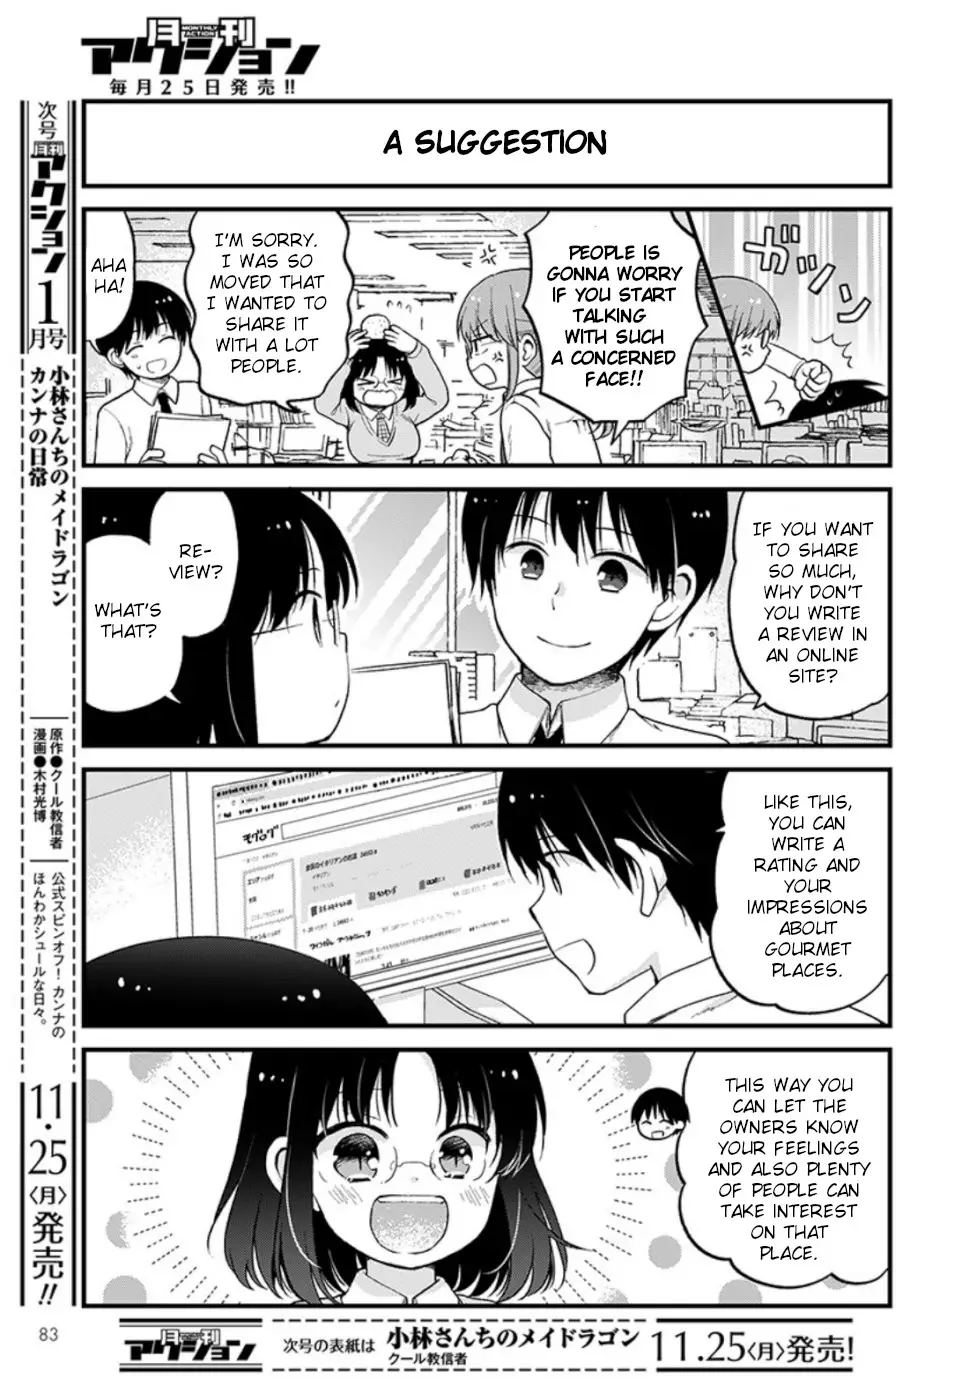 Kobayashi-San Chi No Maid Dragon: Elma Ol Nikki - 27 page 3